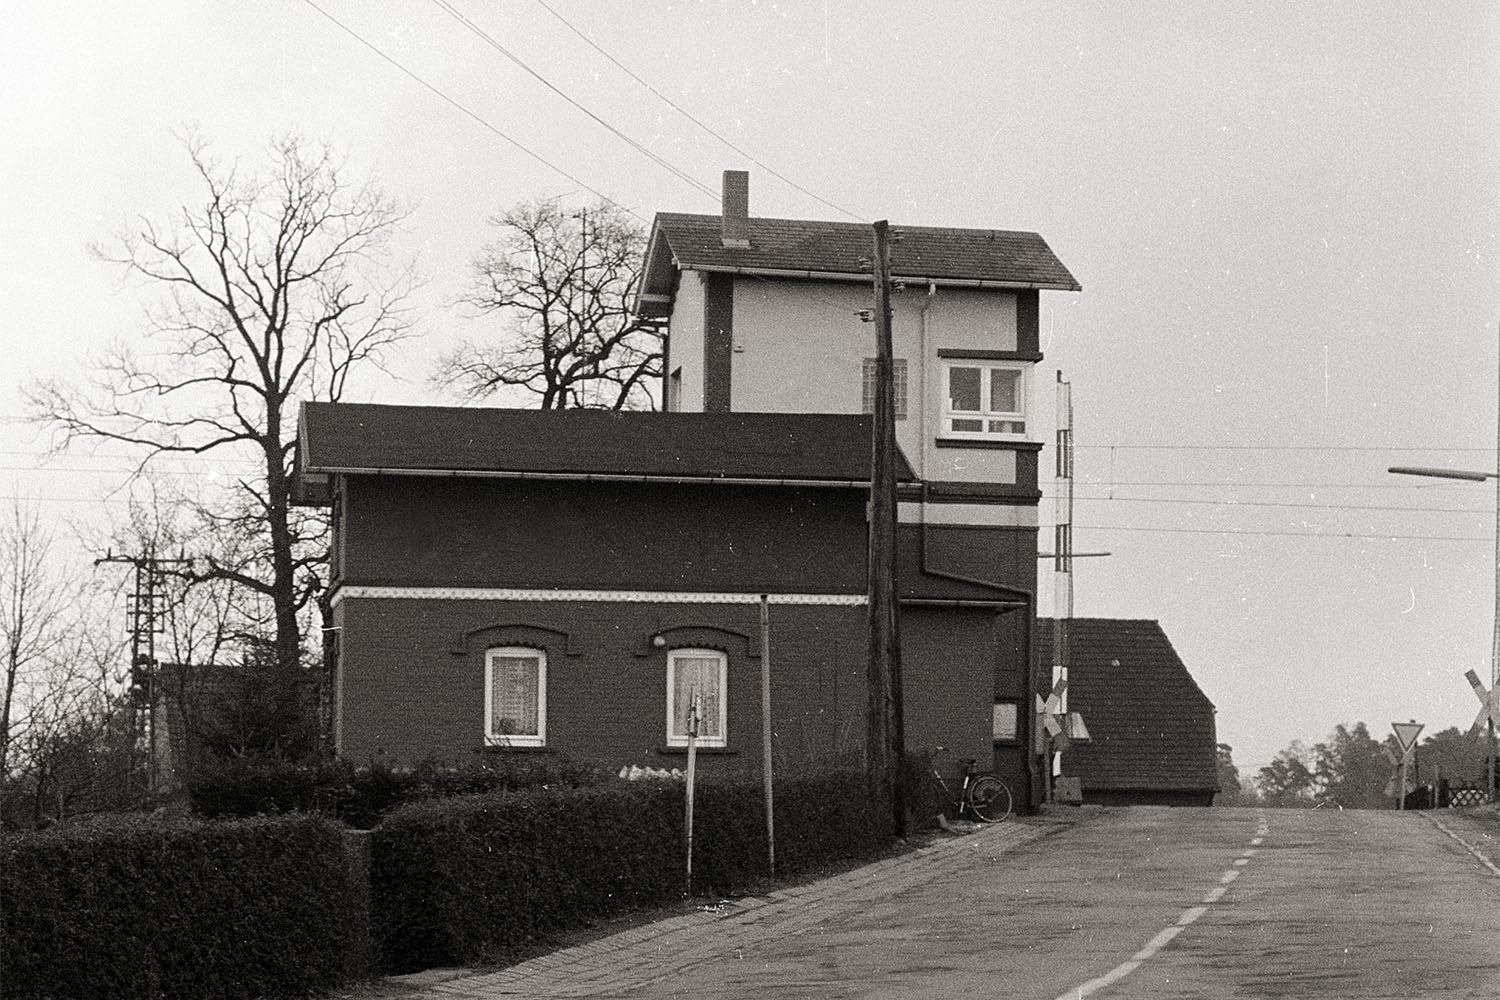 Das ehemalige Fahrdienstleisterstellwerk "Enf" des Bahnhofs Eilvese von der Straßenseite, Mitte der 80er Jahre